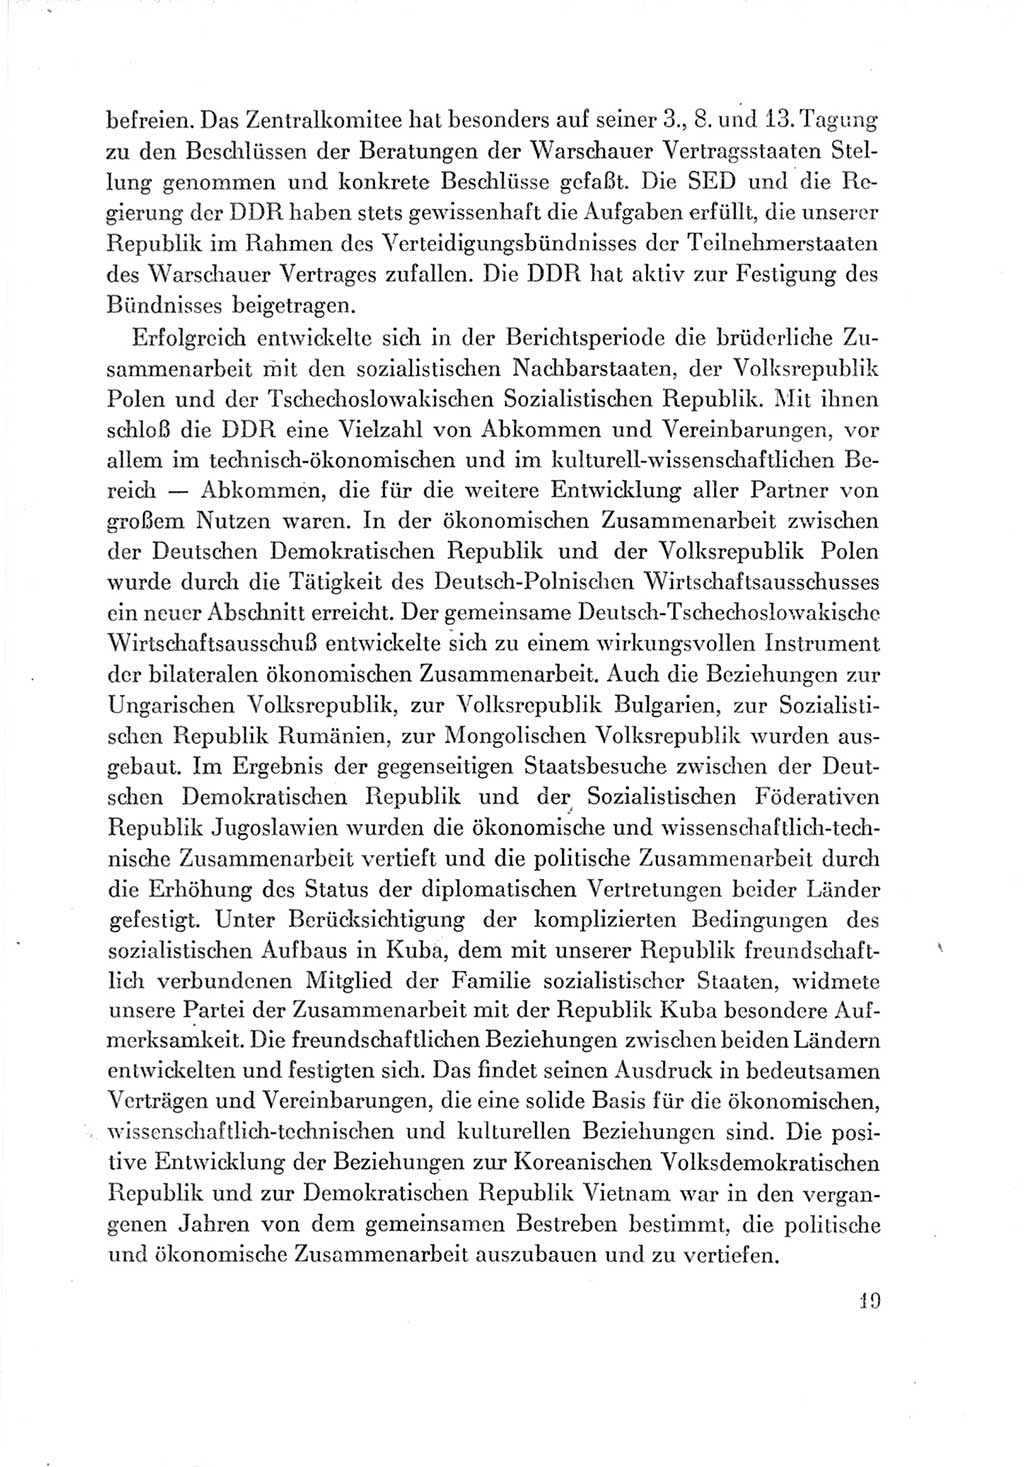 Protokoll der Verhandlungen des Ⅶ. Parteitages der Sozialistischen Einheitspartei Deutschlands (SED) [Deutsche Demokratische Republik (DDR)] 1967, Band Ⅳ, Seite 19 (Prot. Verh. Ⅶ. PT SED DDR 1967, Bd. Ⅳ, S. 19)